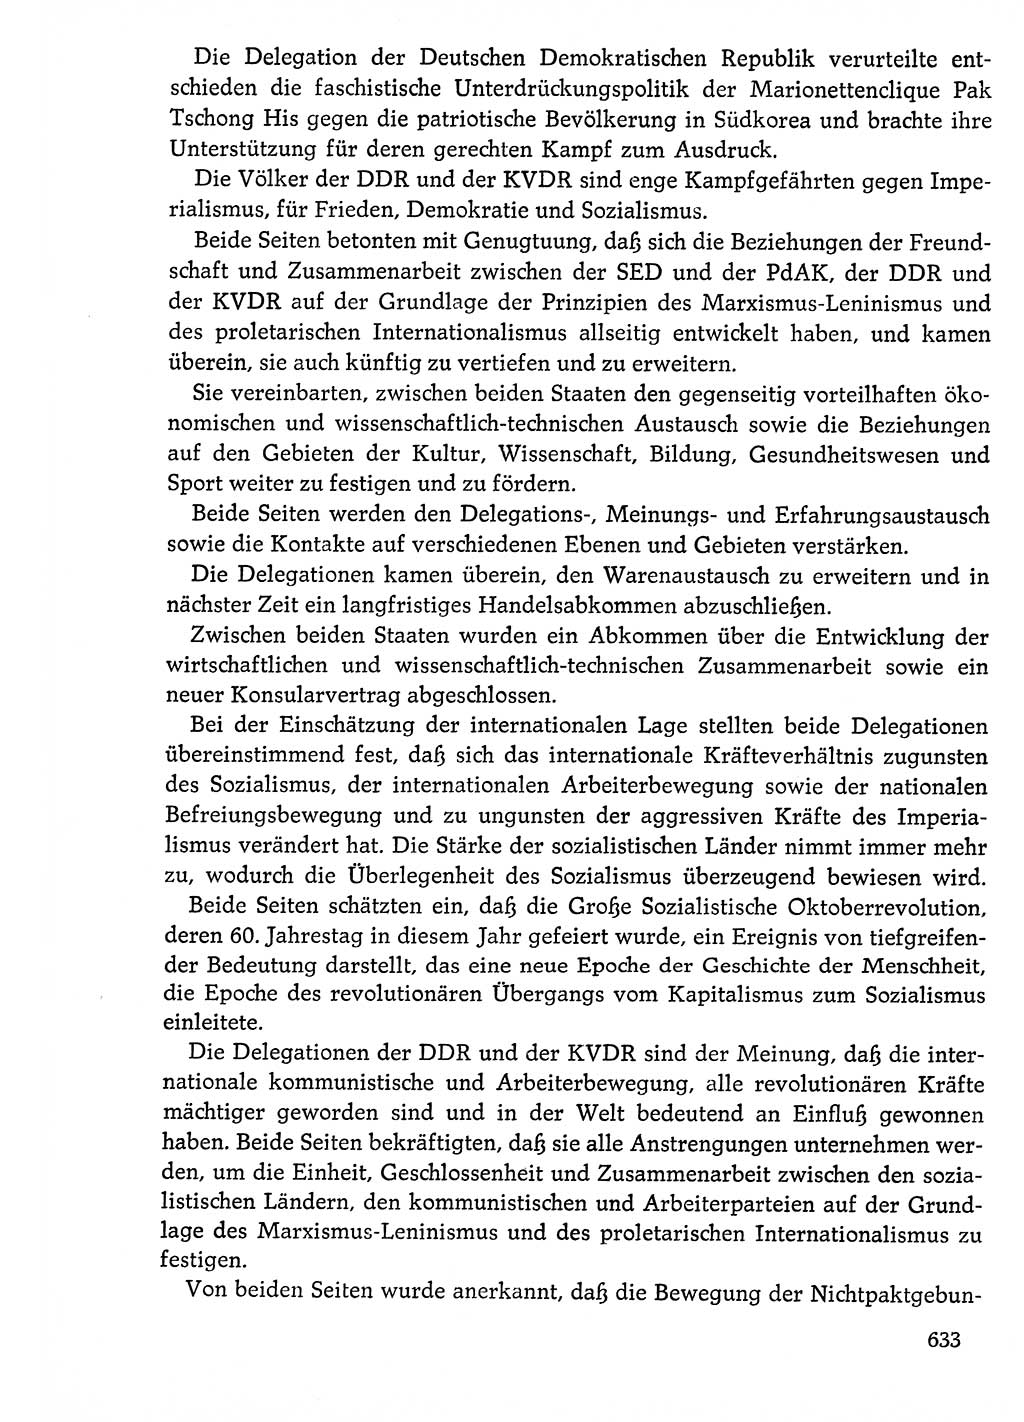 Dokumente der Sozialistischen Einheitspartei Deutschlands (SED) [Deutsche Demokratische Republik (DDR)] 1976-1977, Seite 633 (Dok. SED DDR 1976-1977, S. 633)